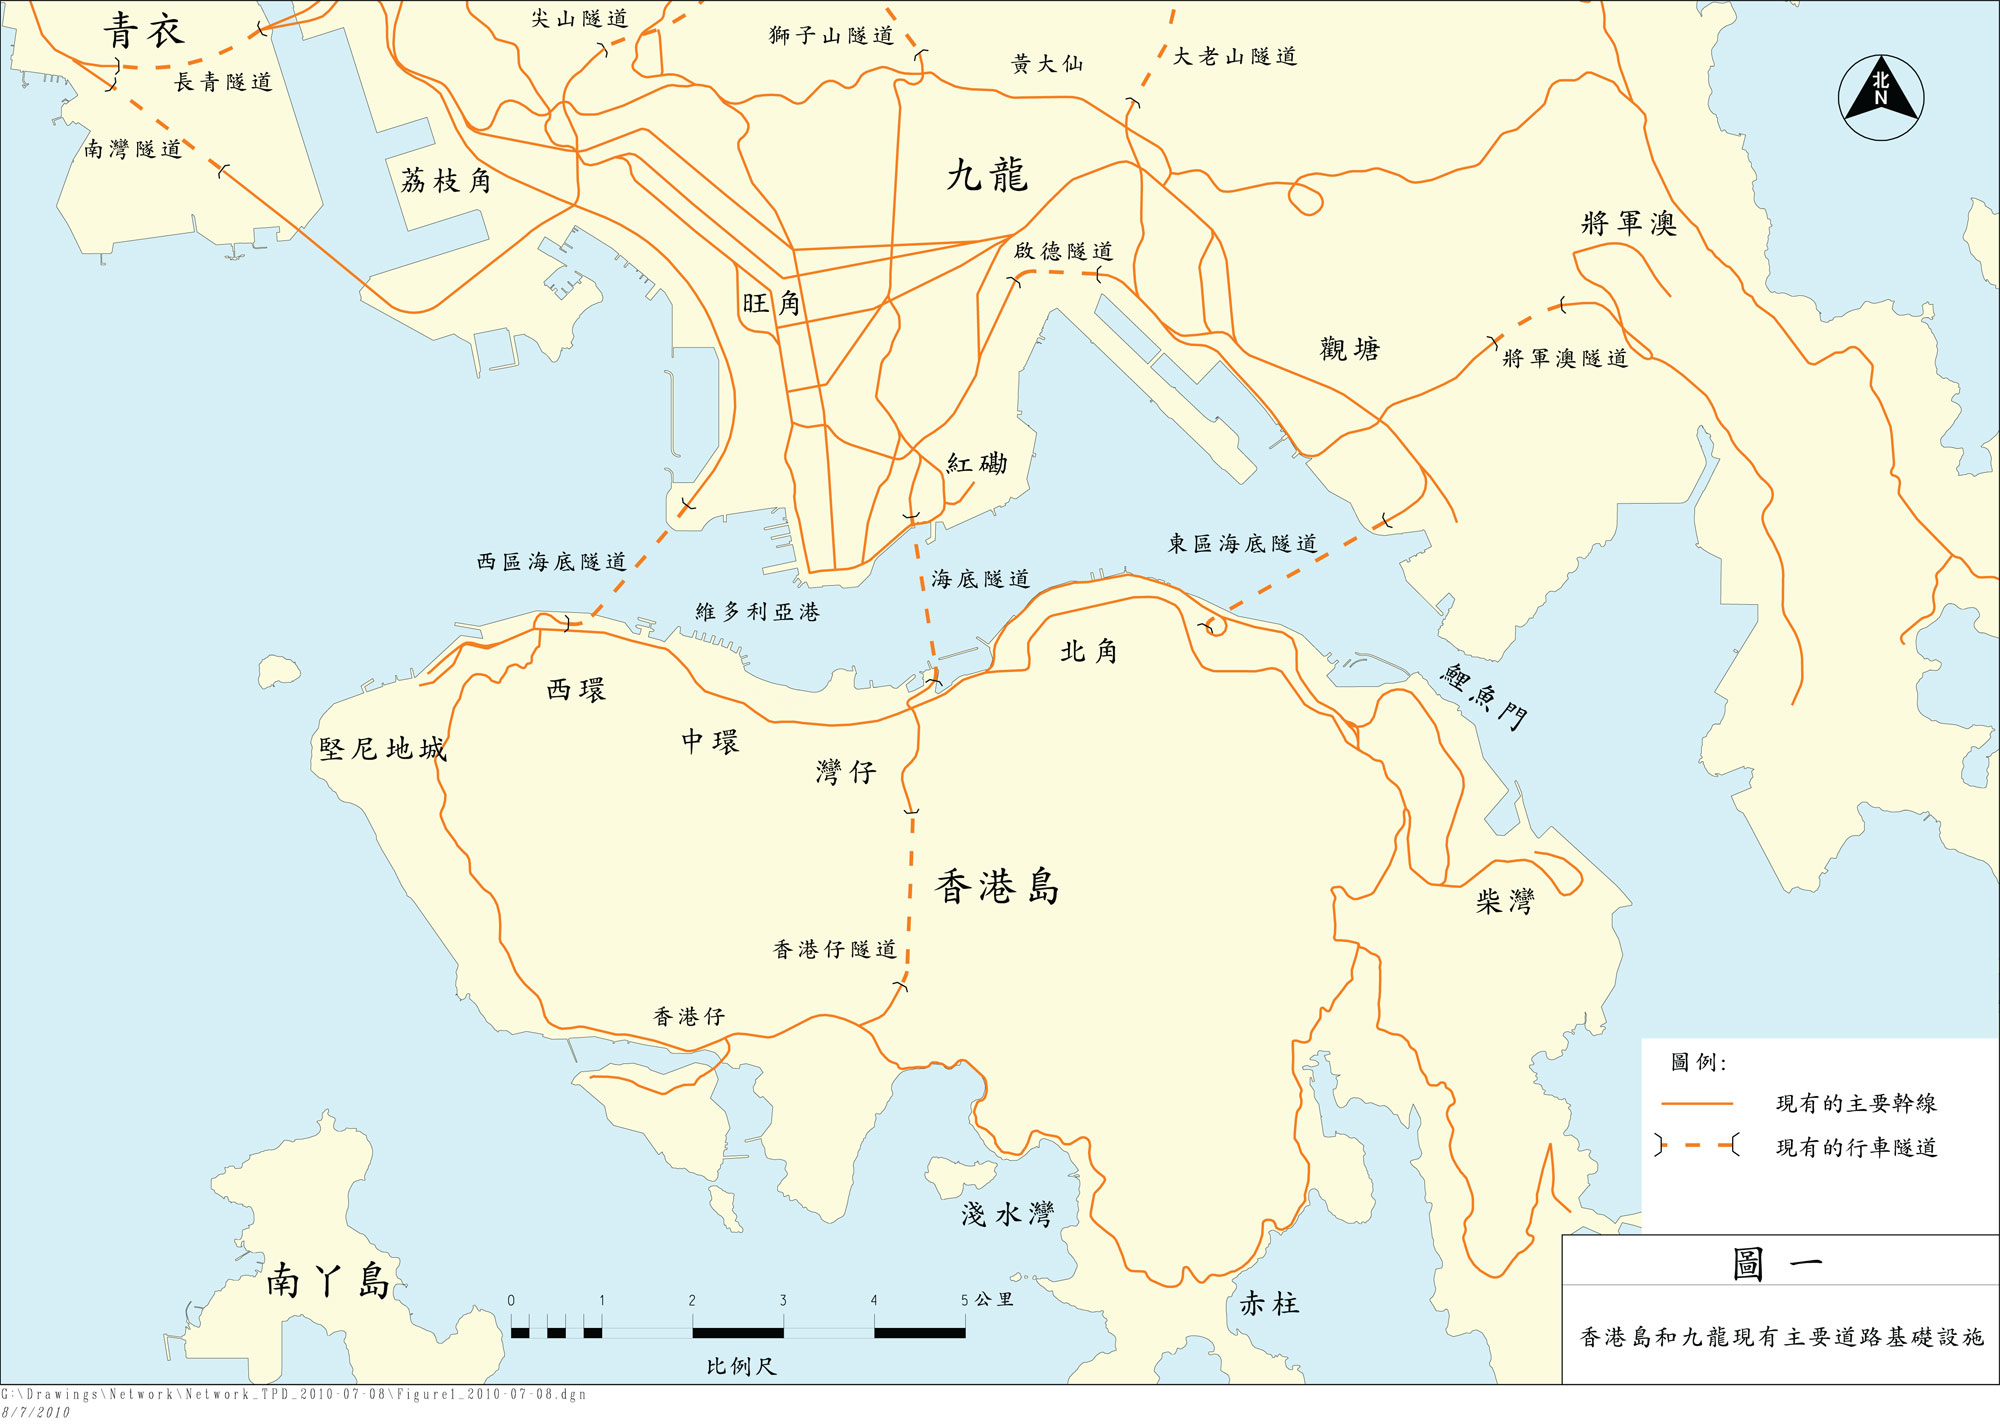 圖一展示香港島和九龍現有主要道路基礎設施